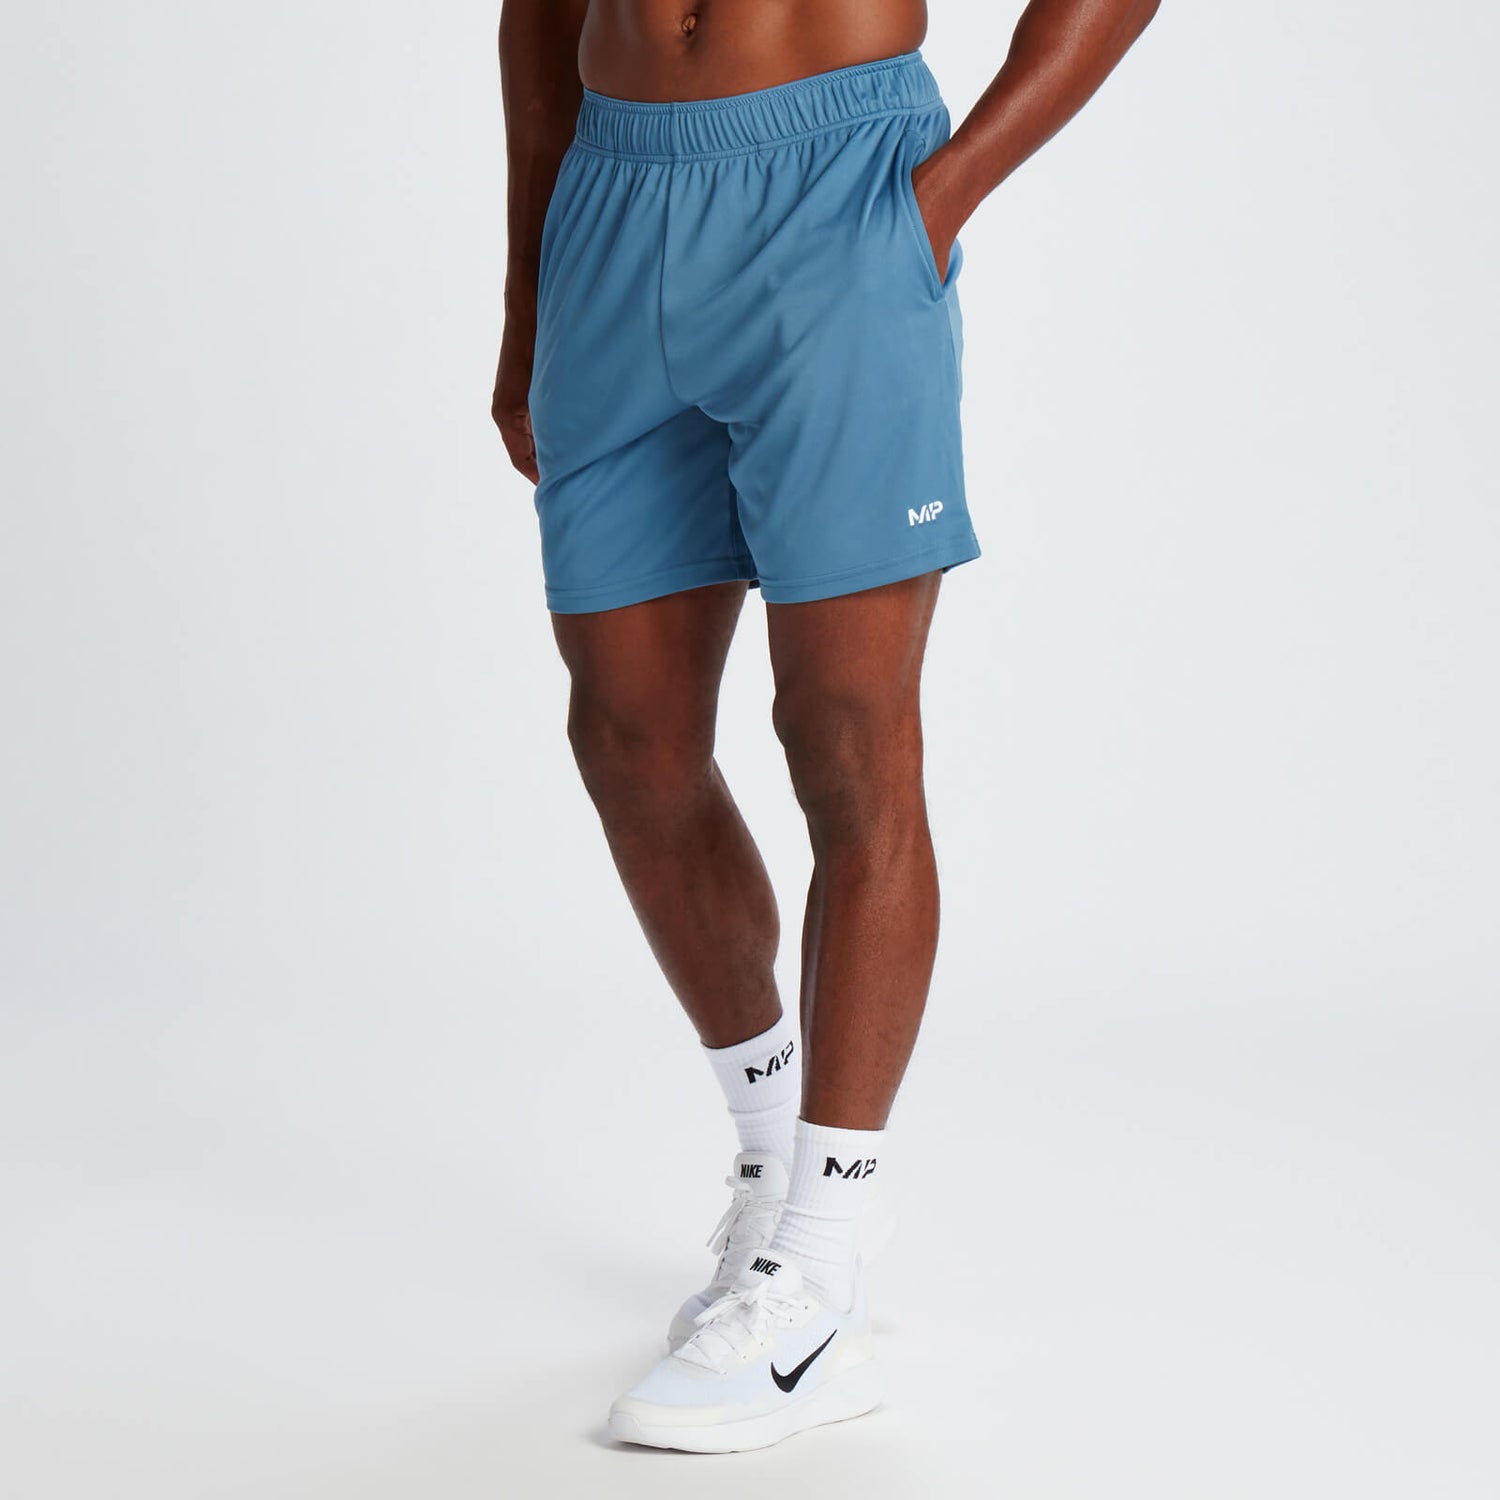 Мужские спортивные шорты MP Lightweight Jersey — Серо-синие - XS